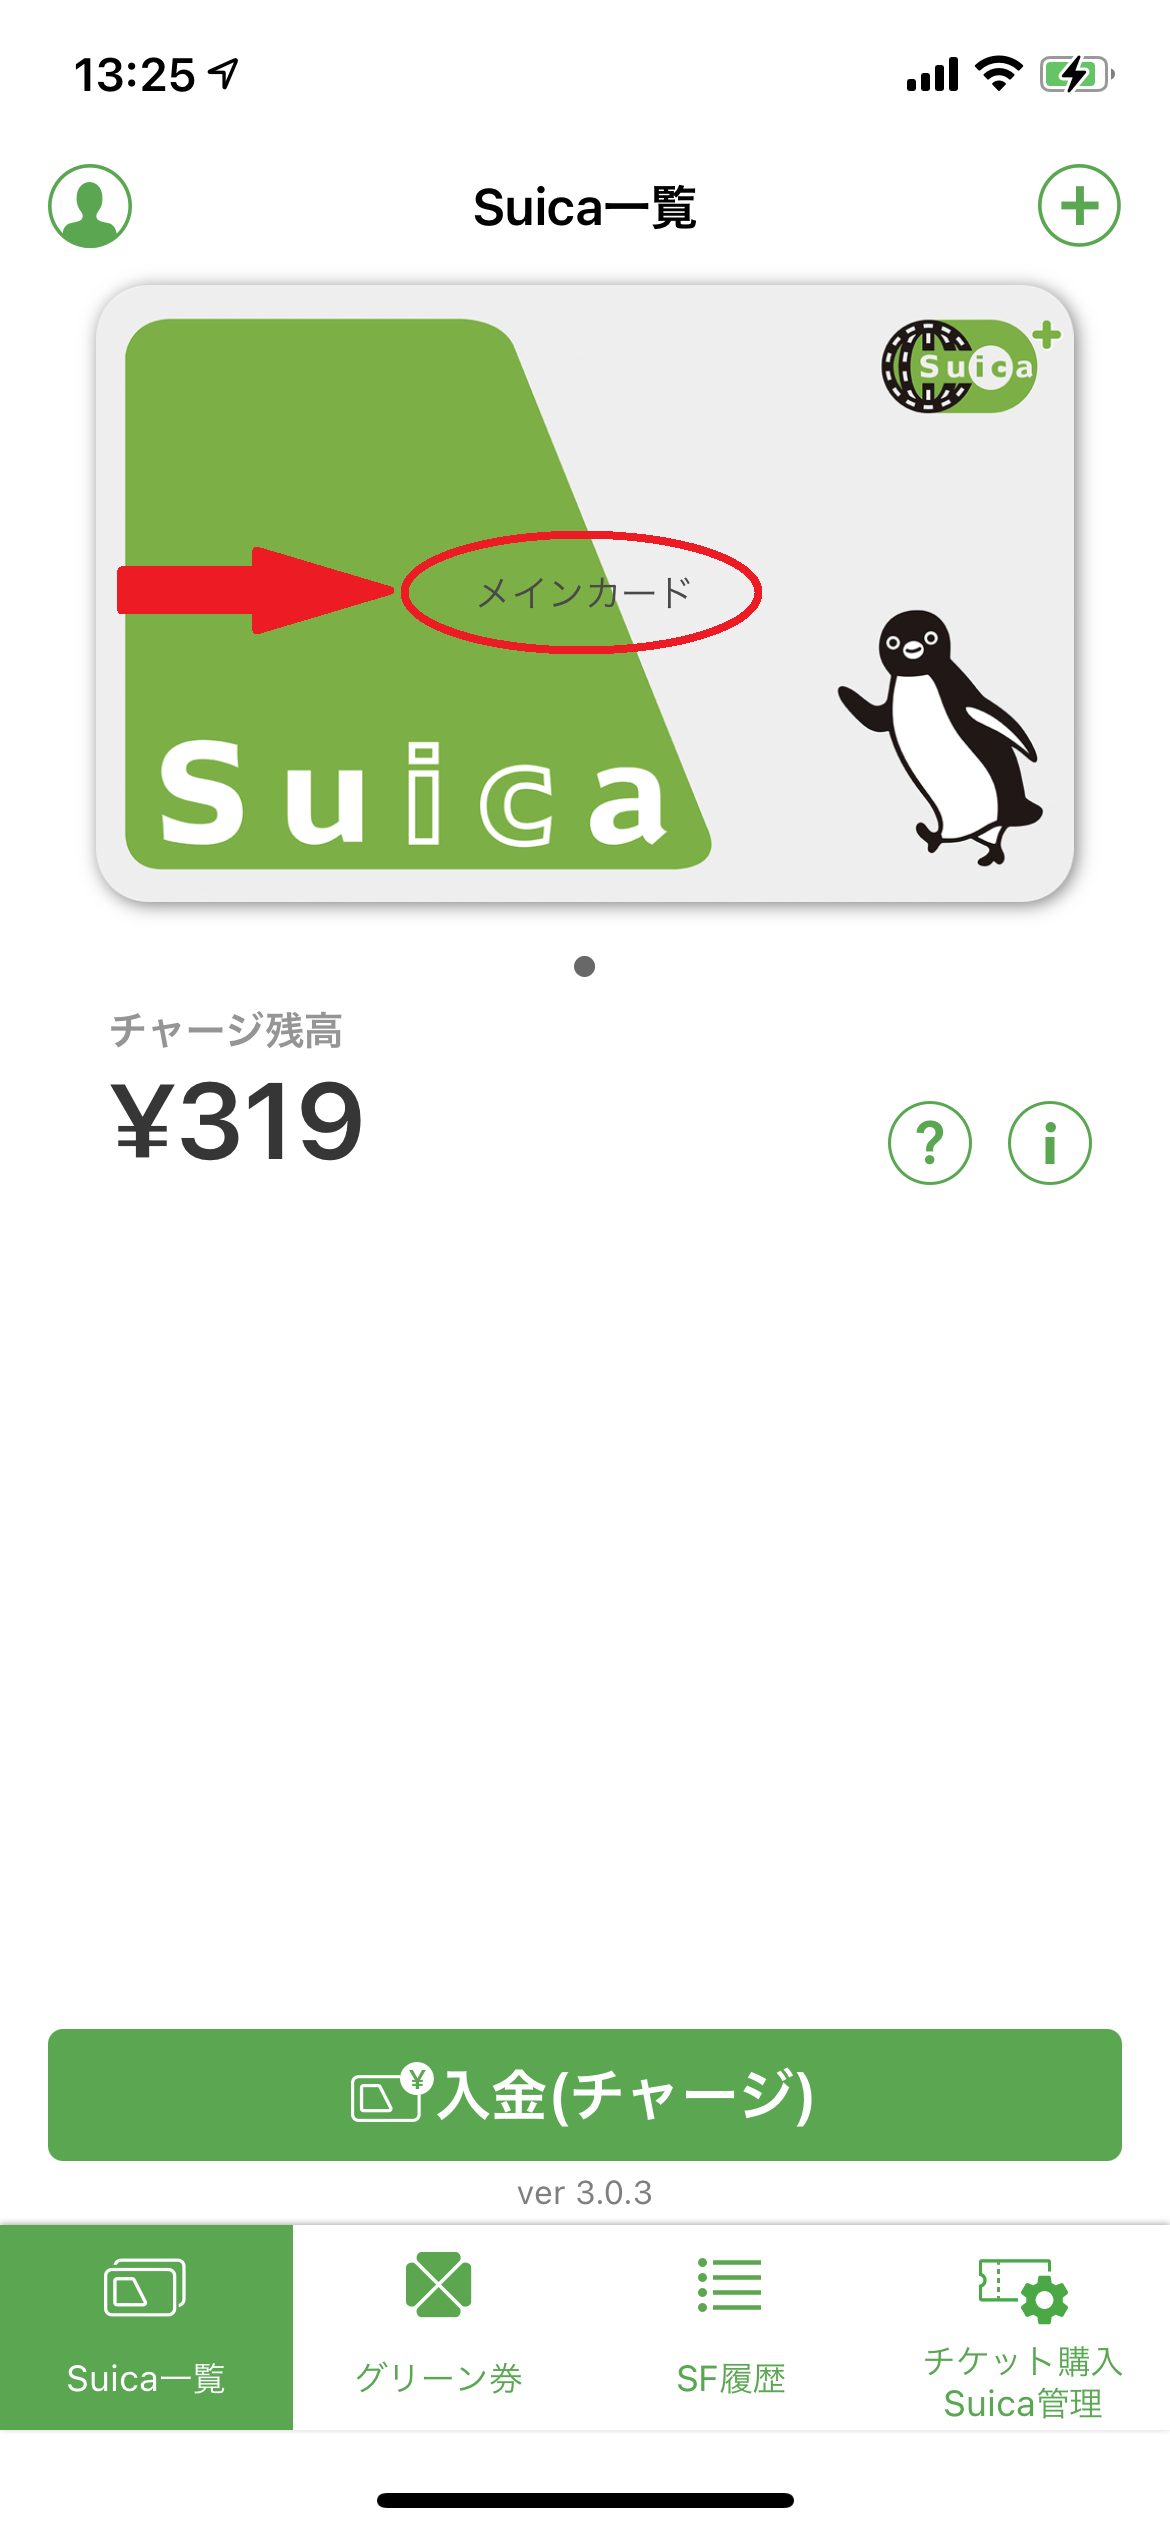 モバイルSuicaのSuica一覧画面のカードをメインカードに変更した画像